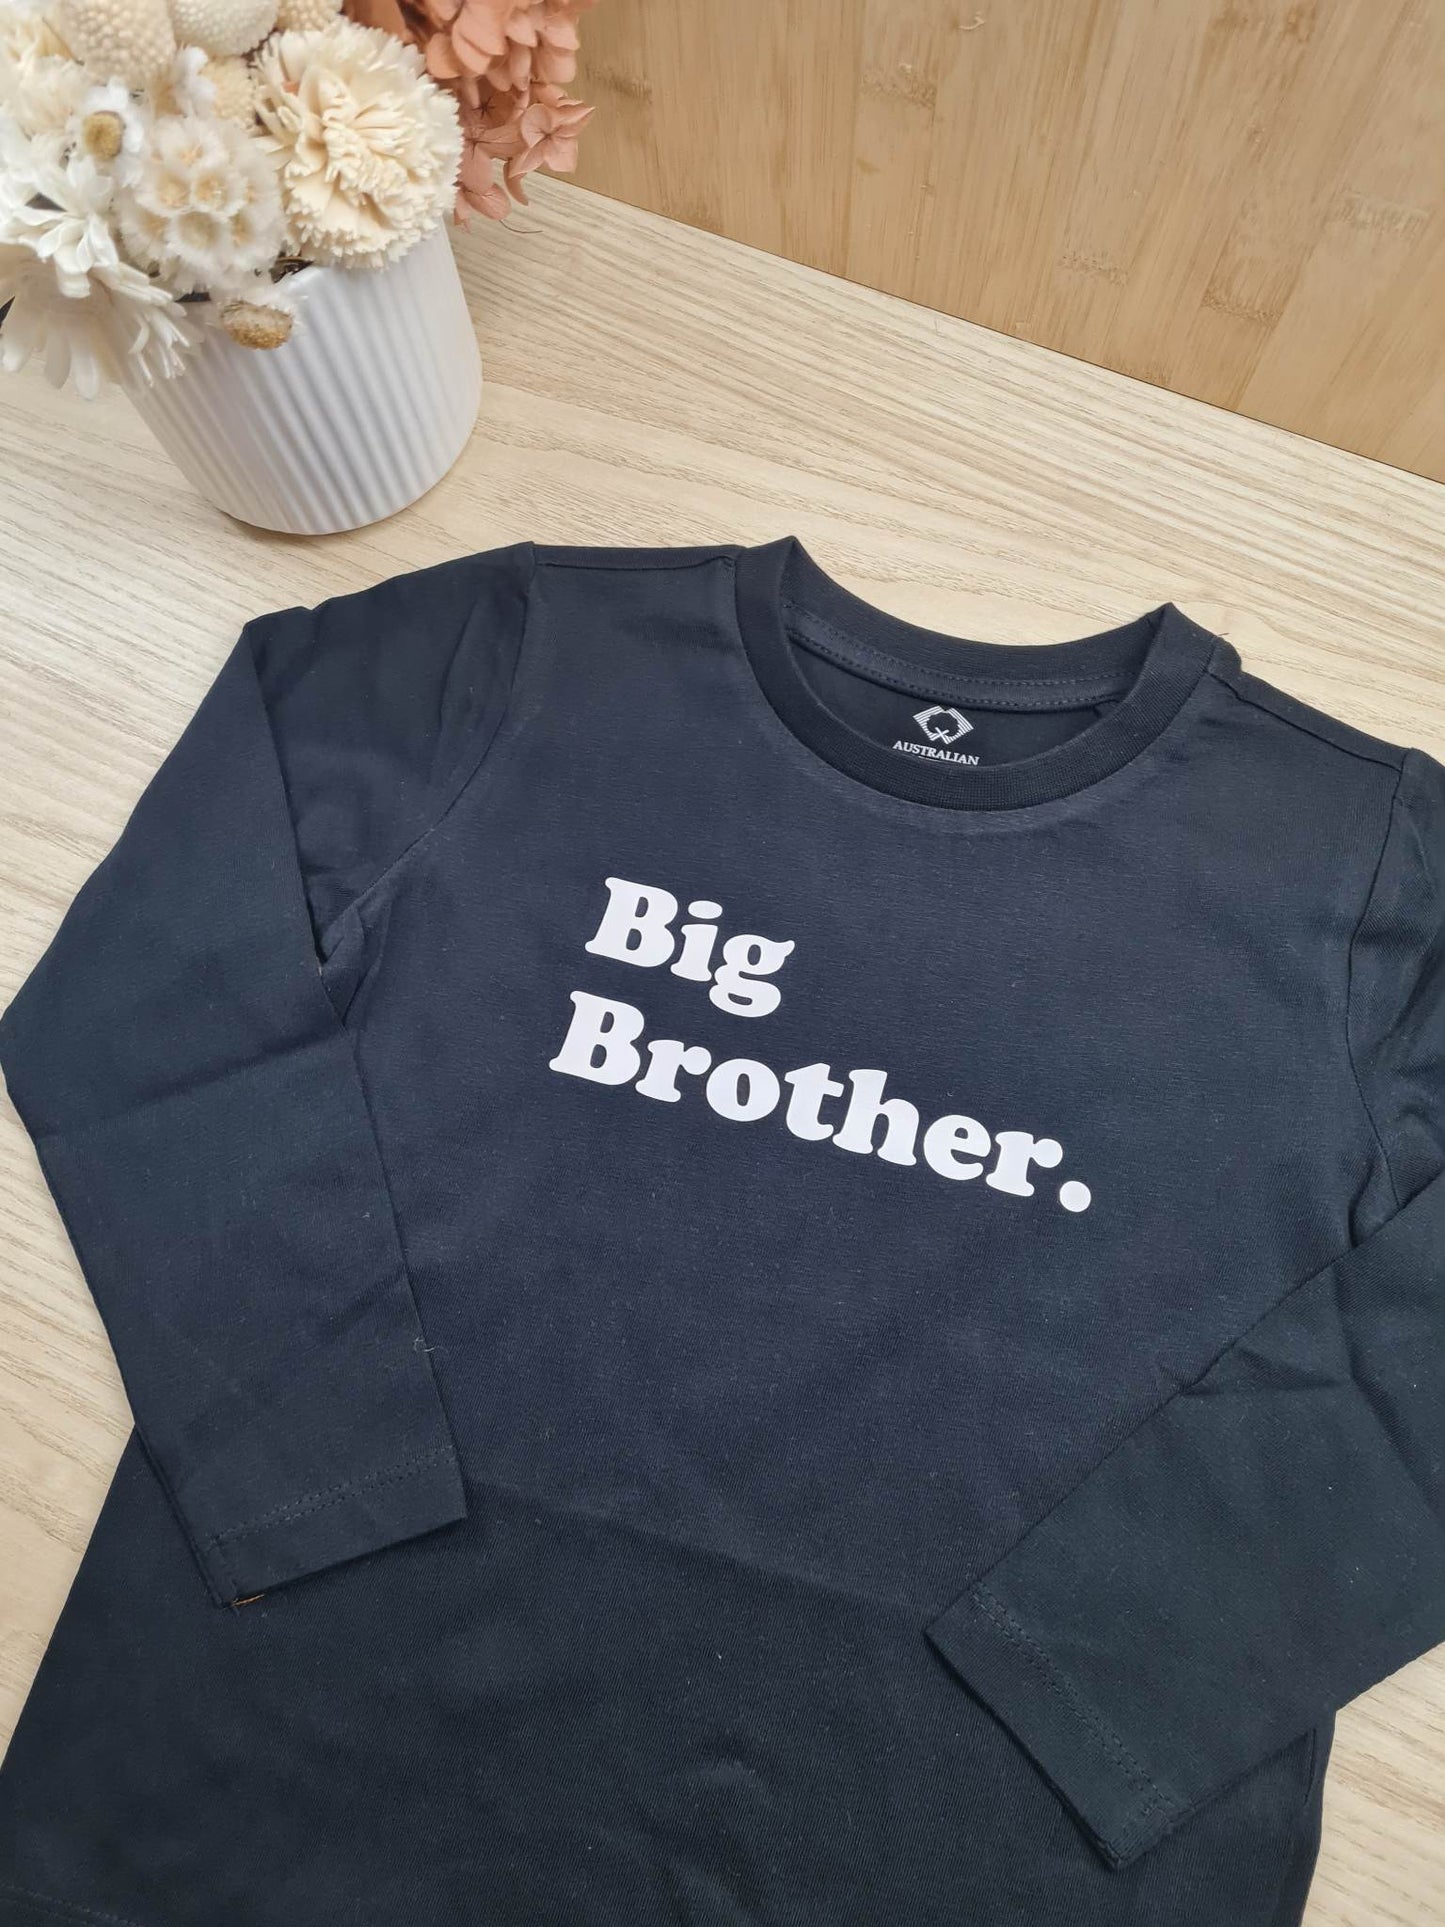 Big Brother./ Sister. Shirt